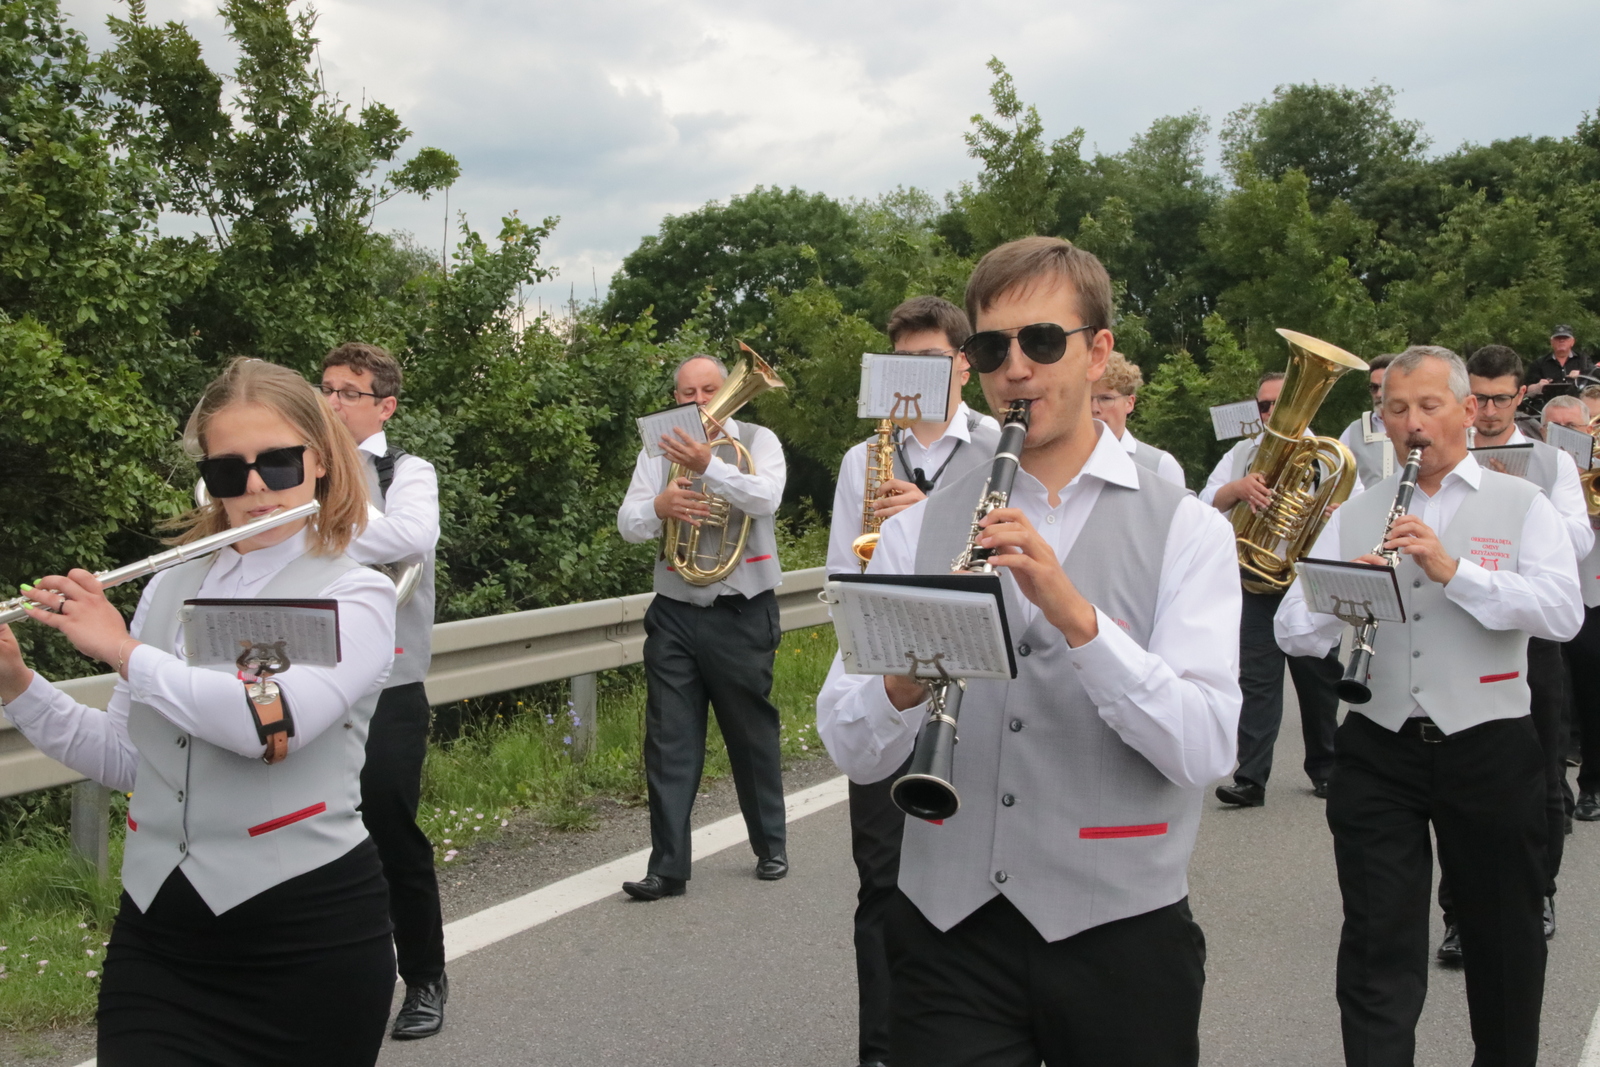 Na zawodach nie zabrakło Orkiestry Dętej Gminy Krzyżanowice, która towarzyszyła w trakcie przemarszu oraz dała krótki koncert na rozpoczęciu